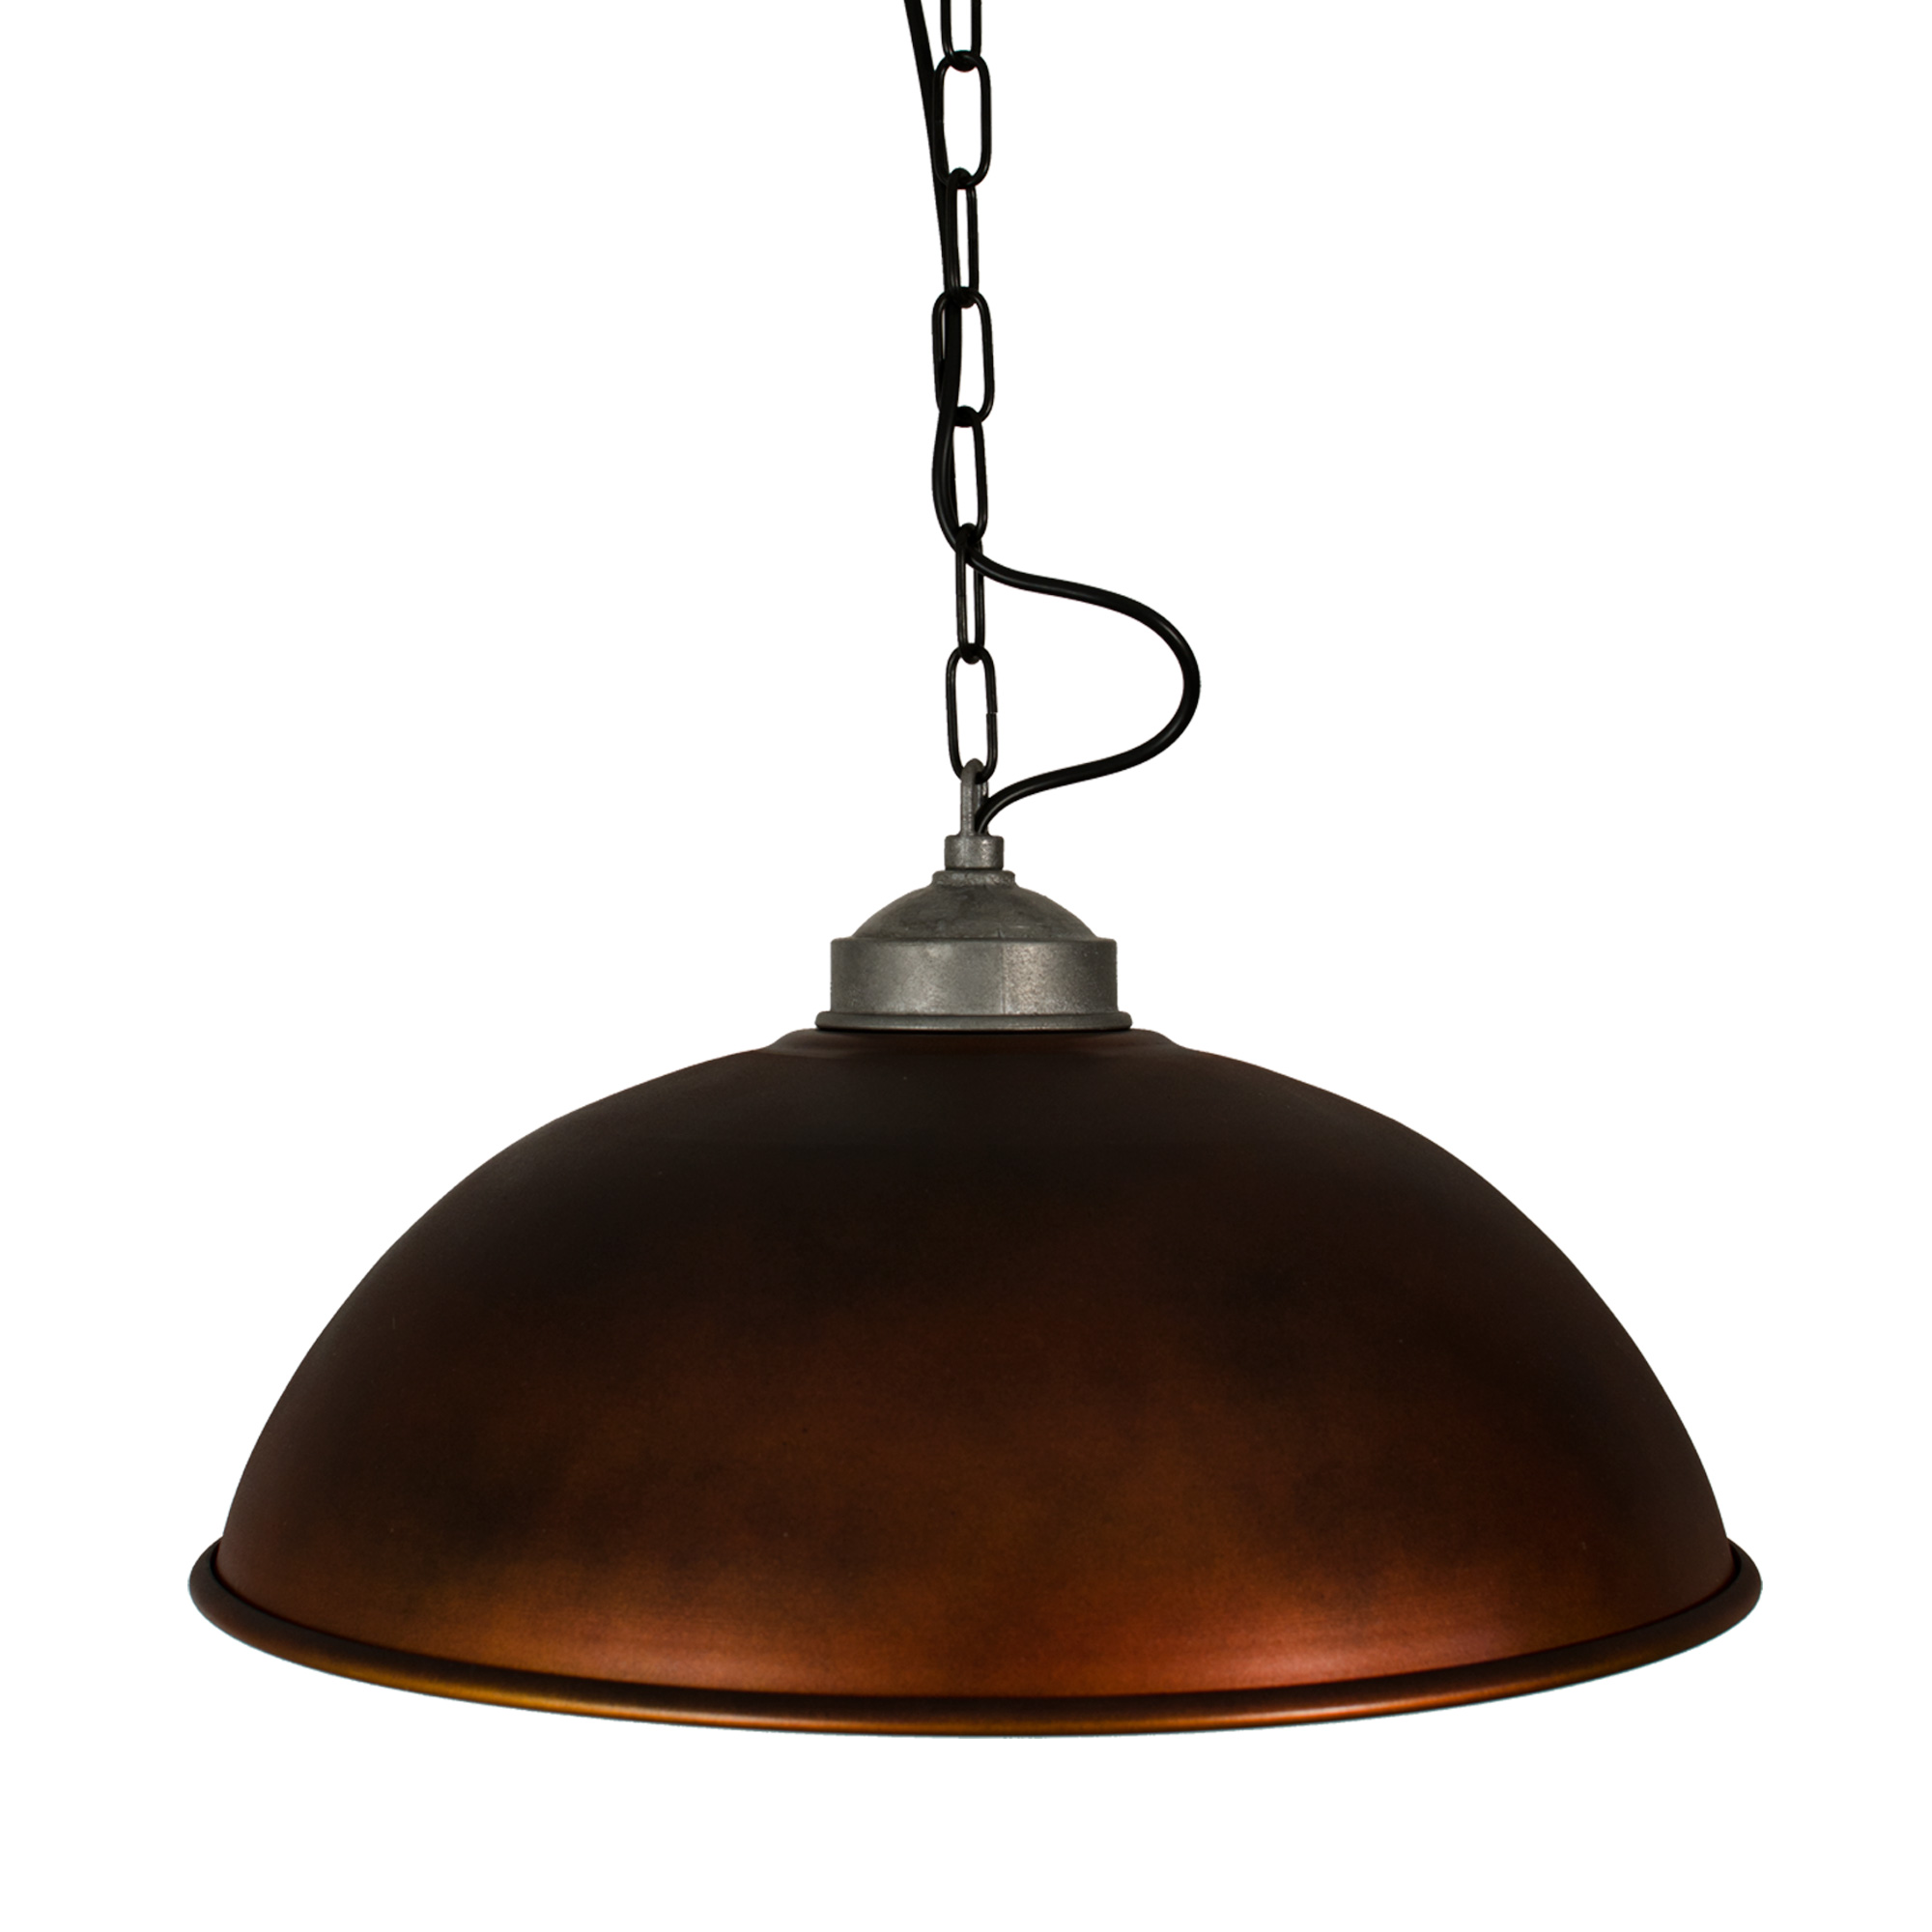 Hanglamp Industrial XL Copper Look